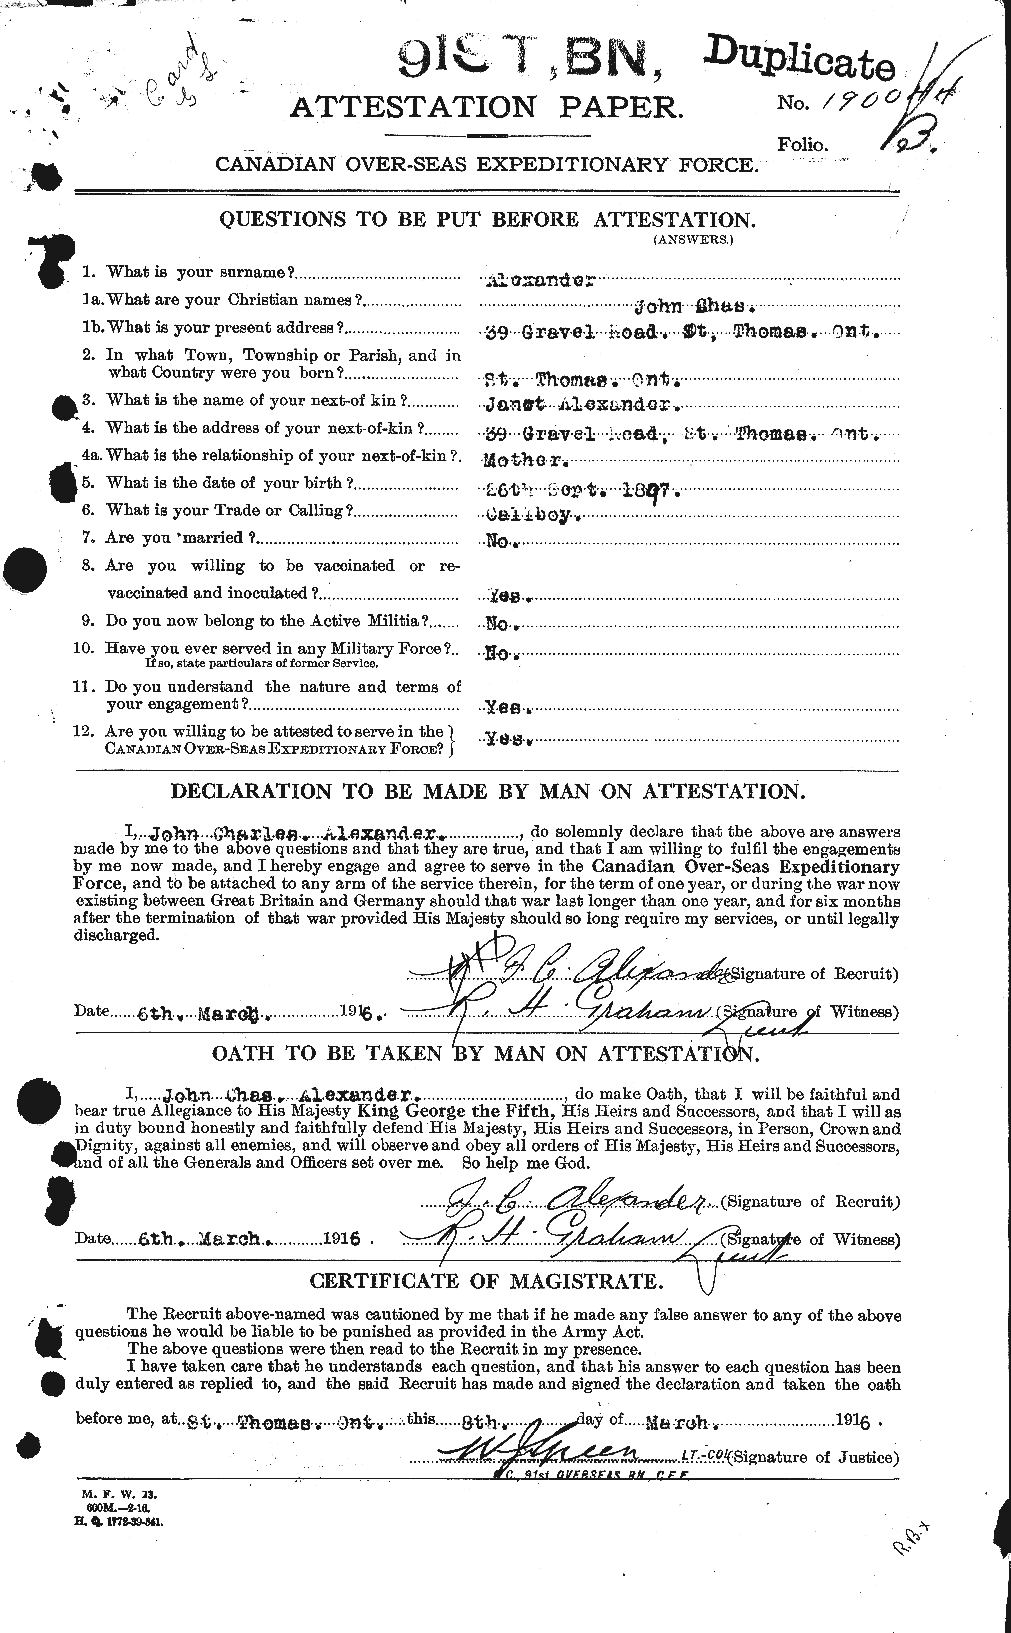 Dossiers du Personnel de la Première Guerre mondiale - CEC 204267a